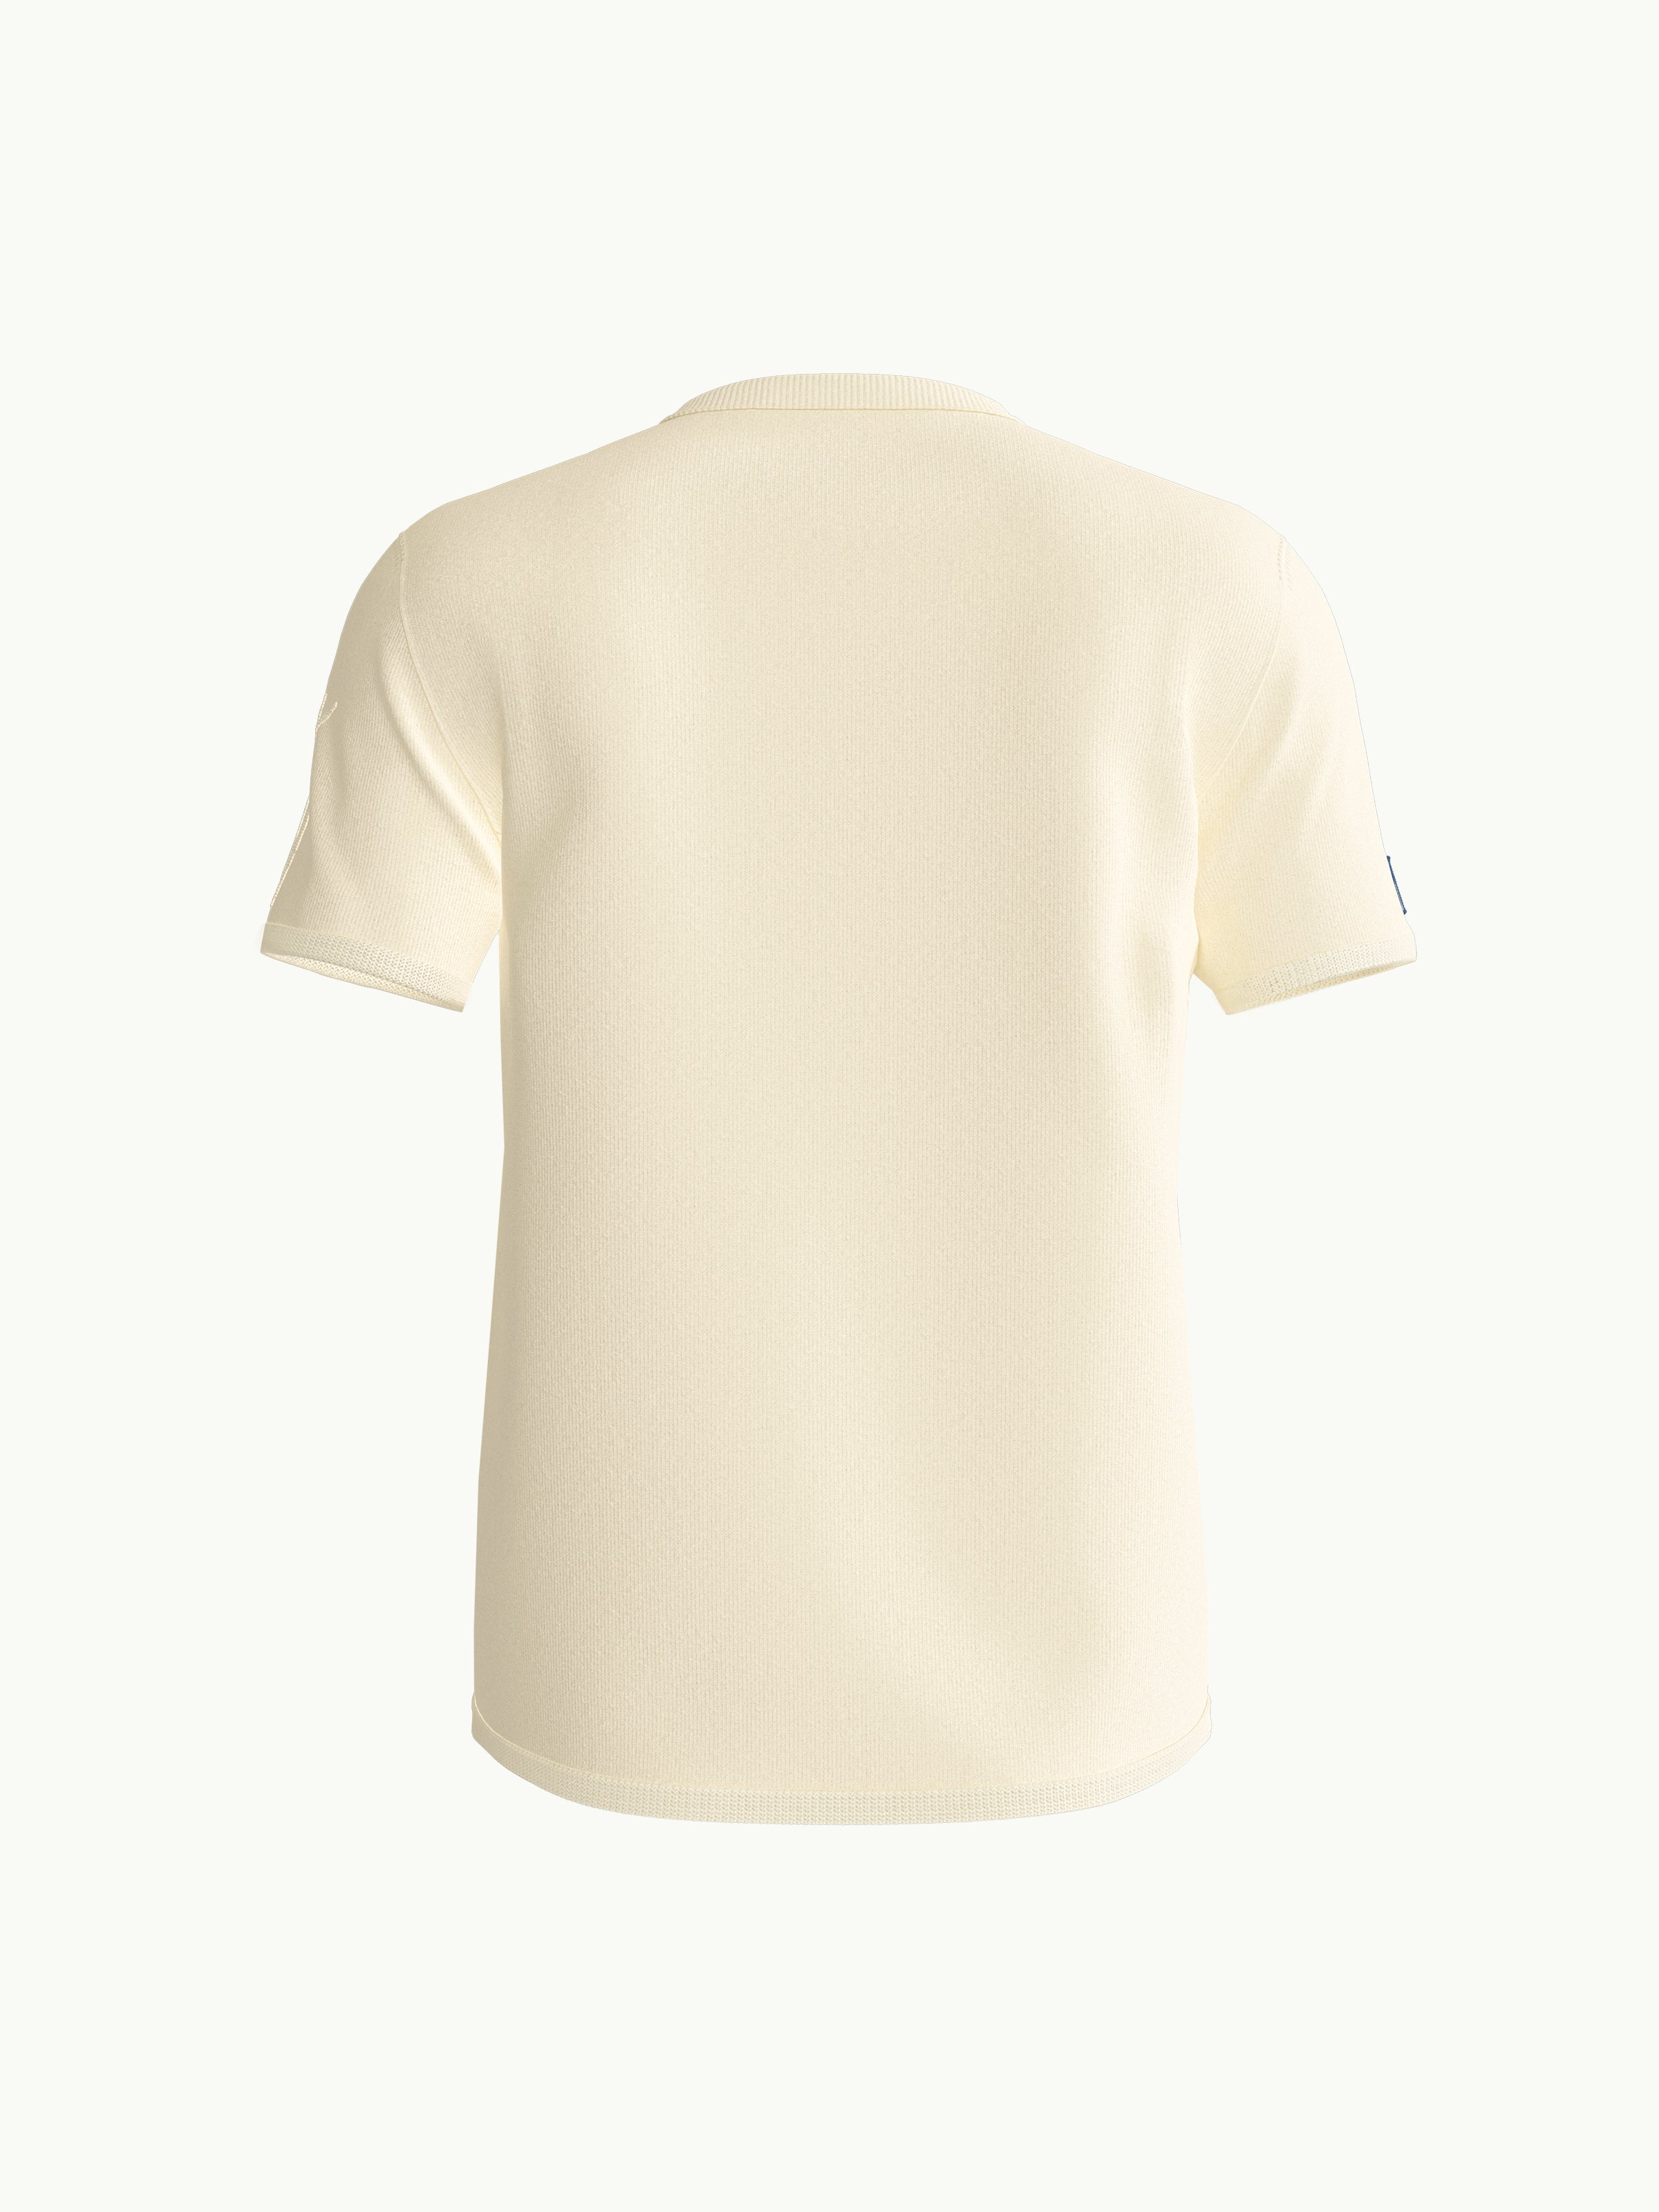 Men's T-Shirt - Numbat Ecru